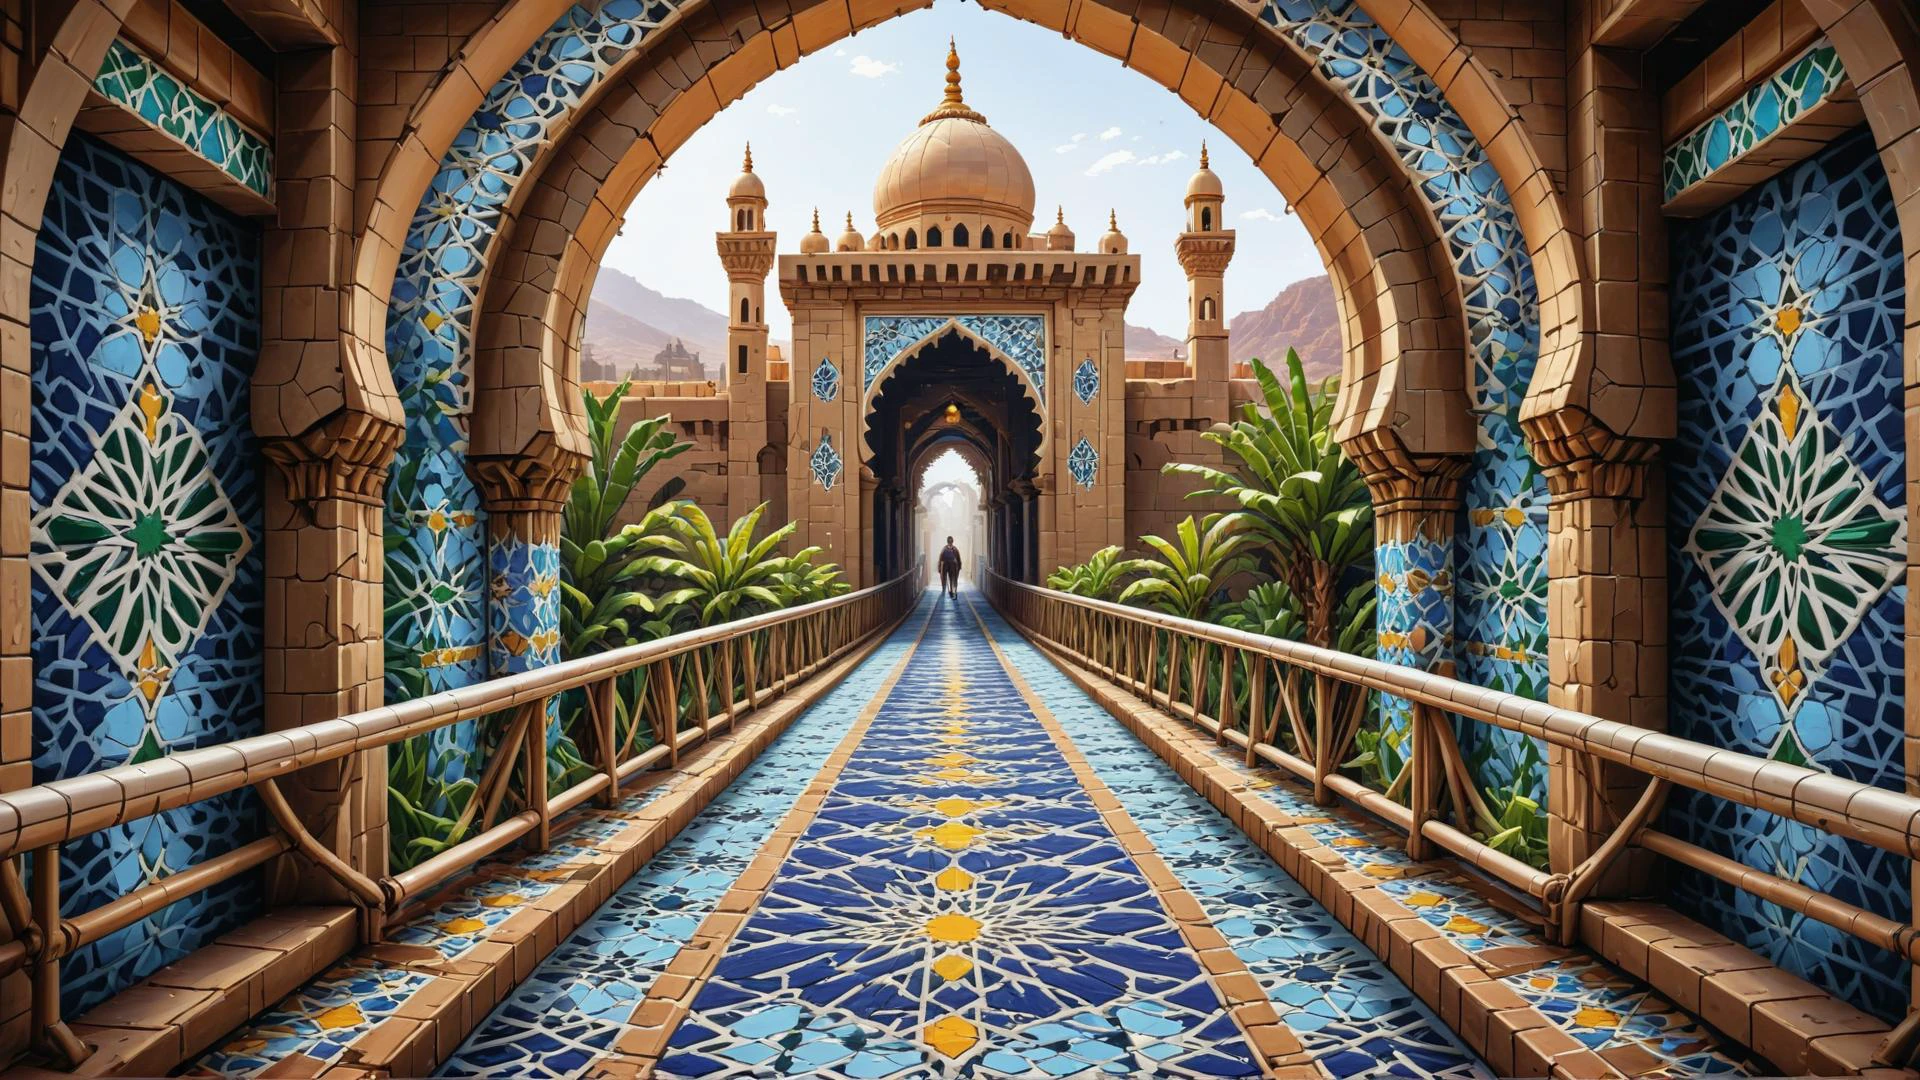 Mundo del arte conceptual, pixabay, HDR, alto contraste, Extranjero marroquí desde el interior de una pasarela, Estilo demasiado complejo, Ganador del concurso, fondo blanco liso, pixel art zlj-xl